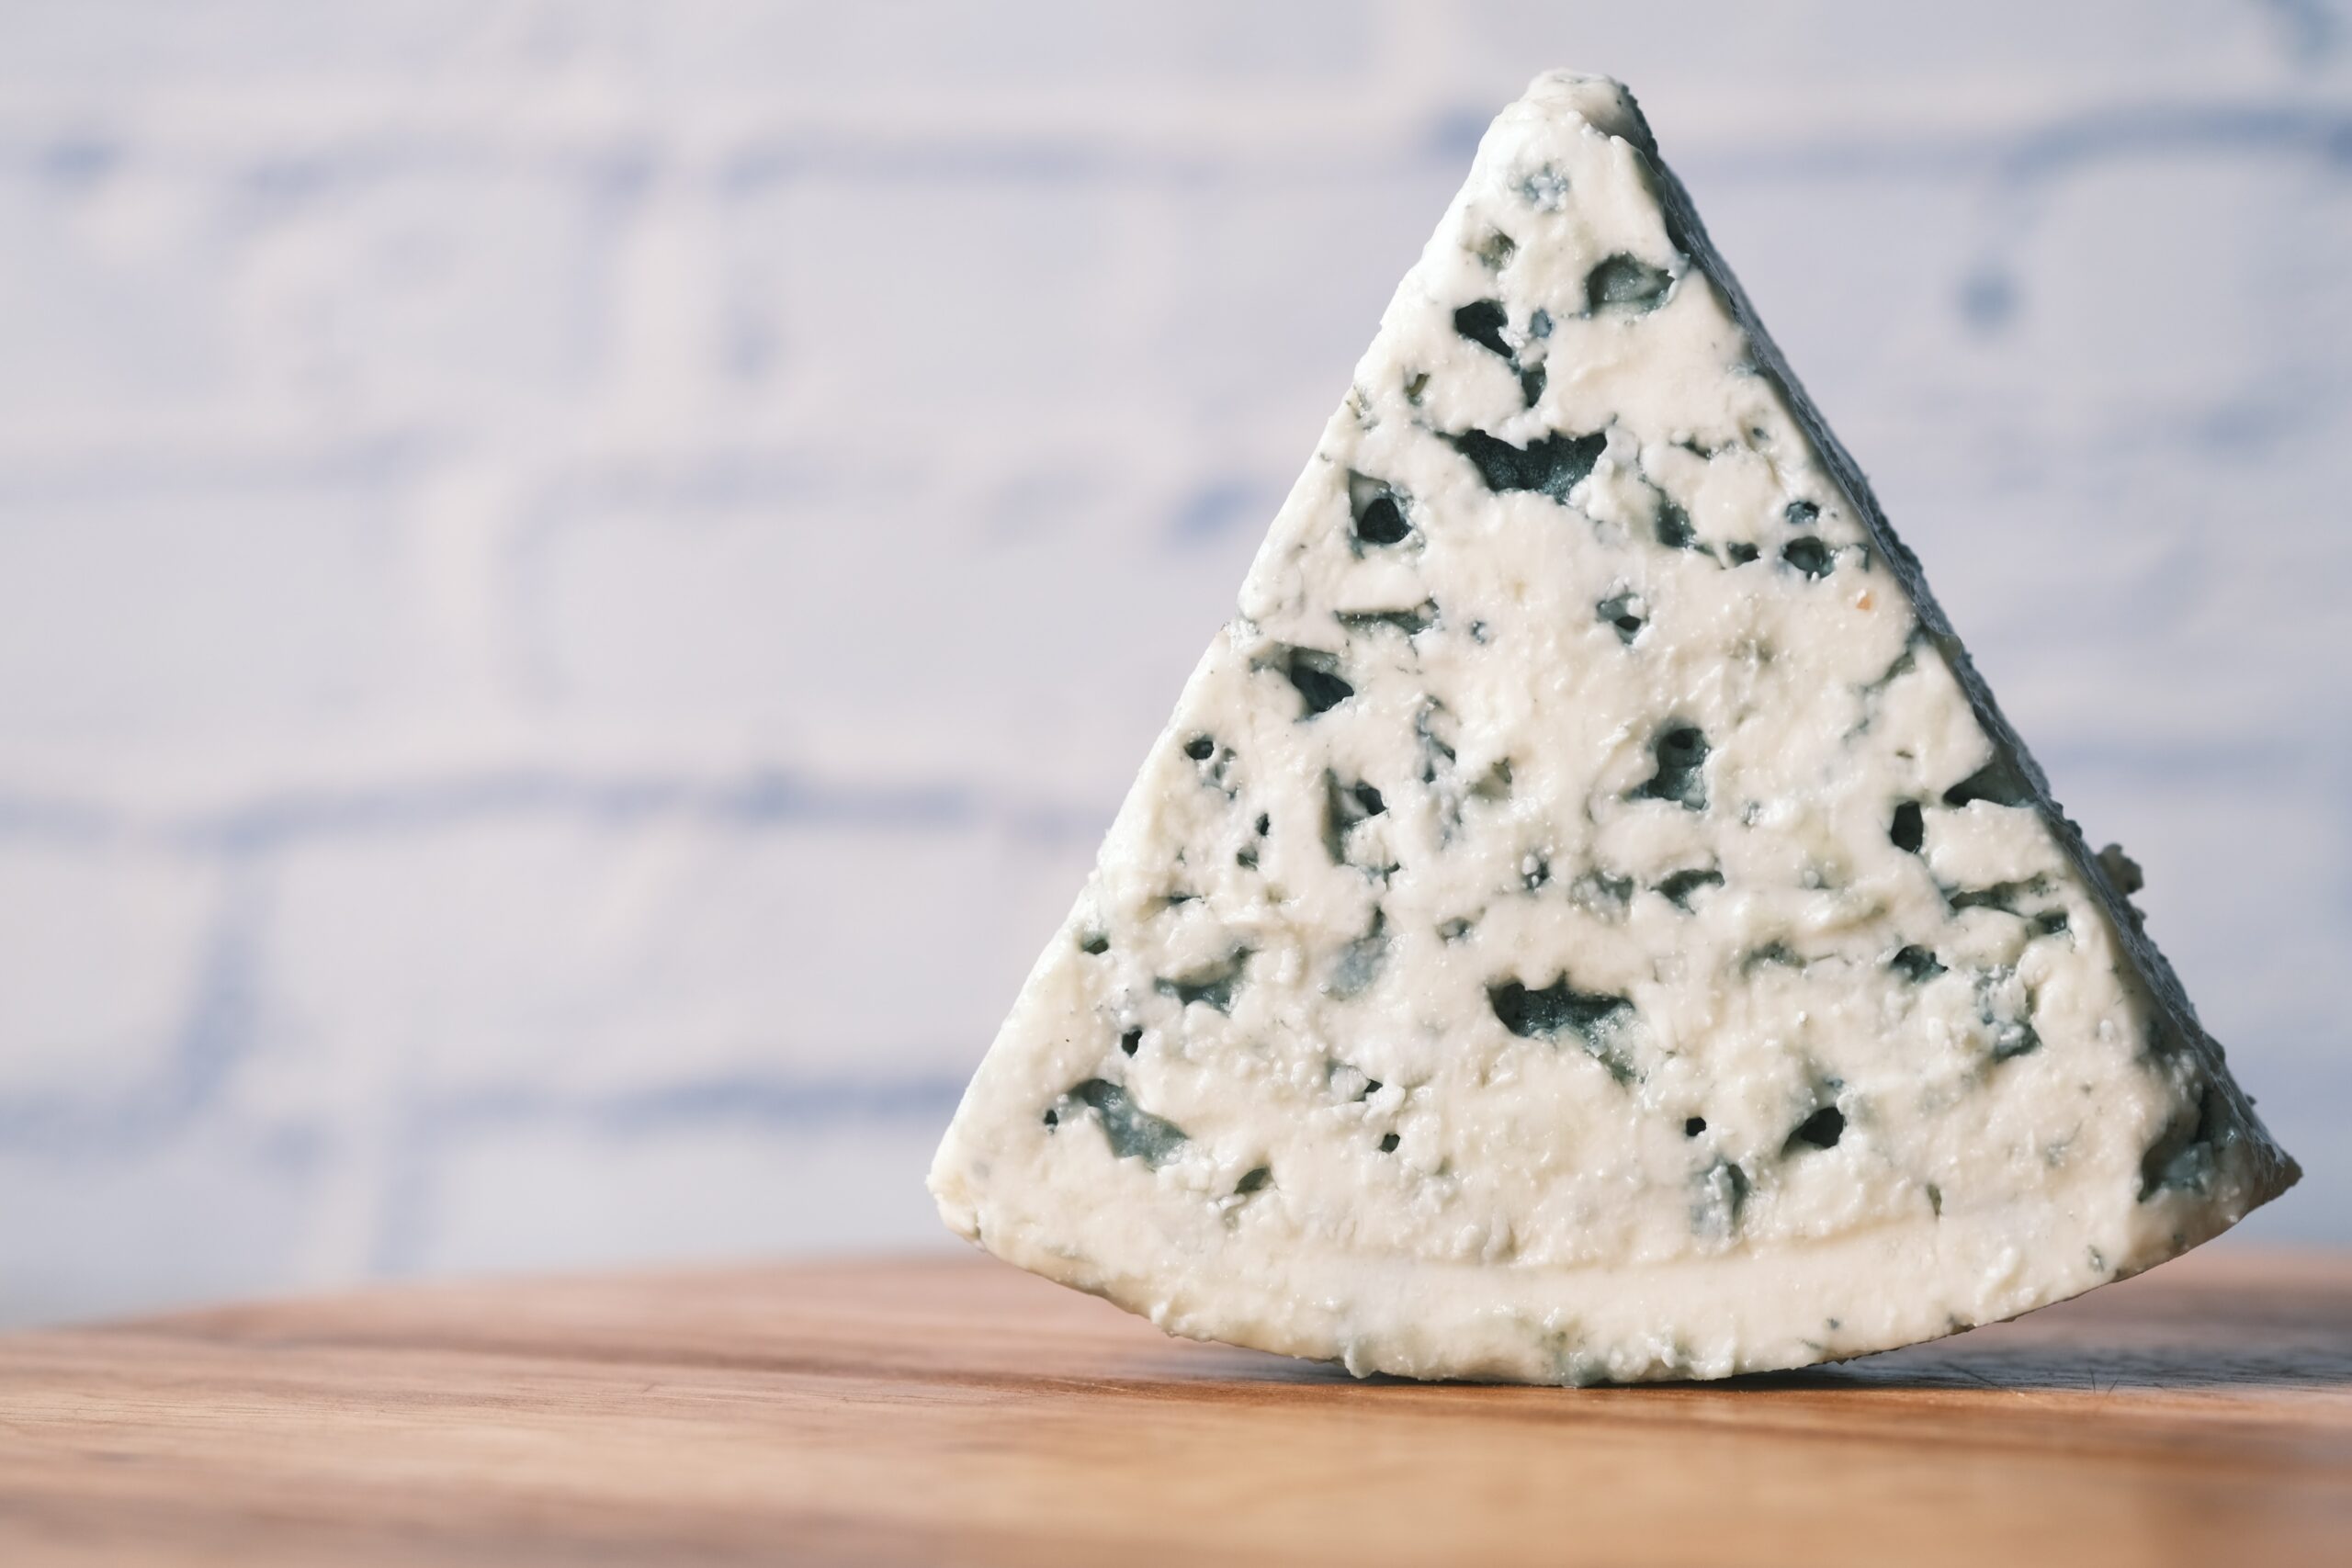 Diferencia entre queso azul y queso roquefort